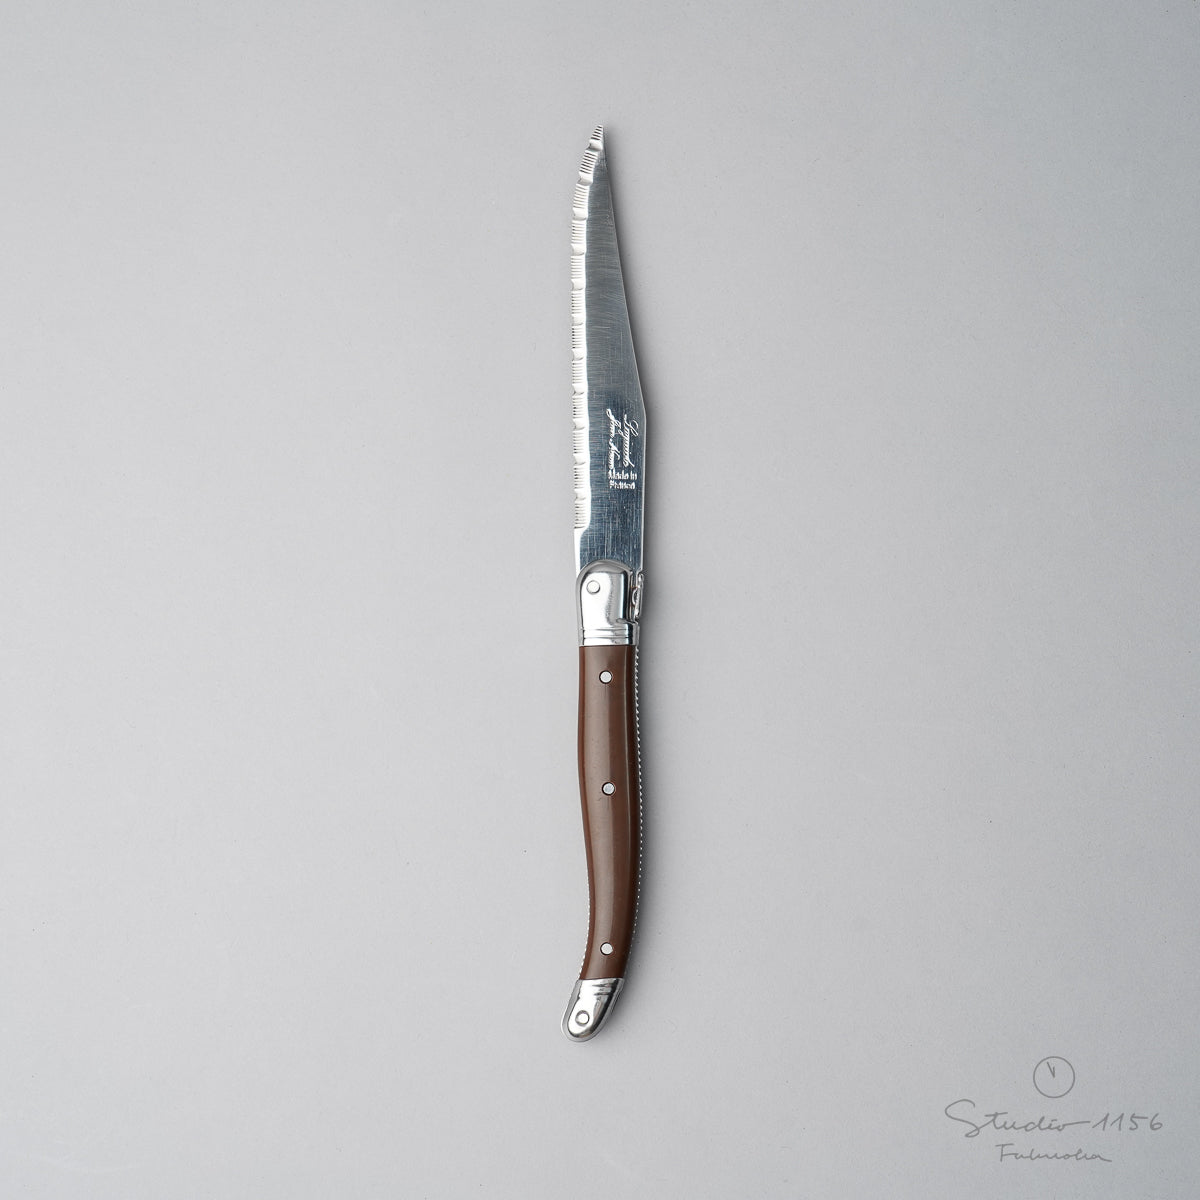 ジャン・ネロン ライヨール ステーキナイフ 23cm Chocolate(チョコ) Cutlery-neron Studio1156